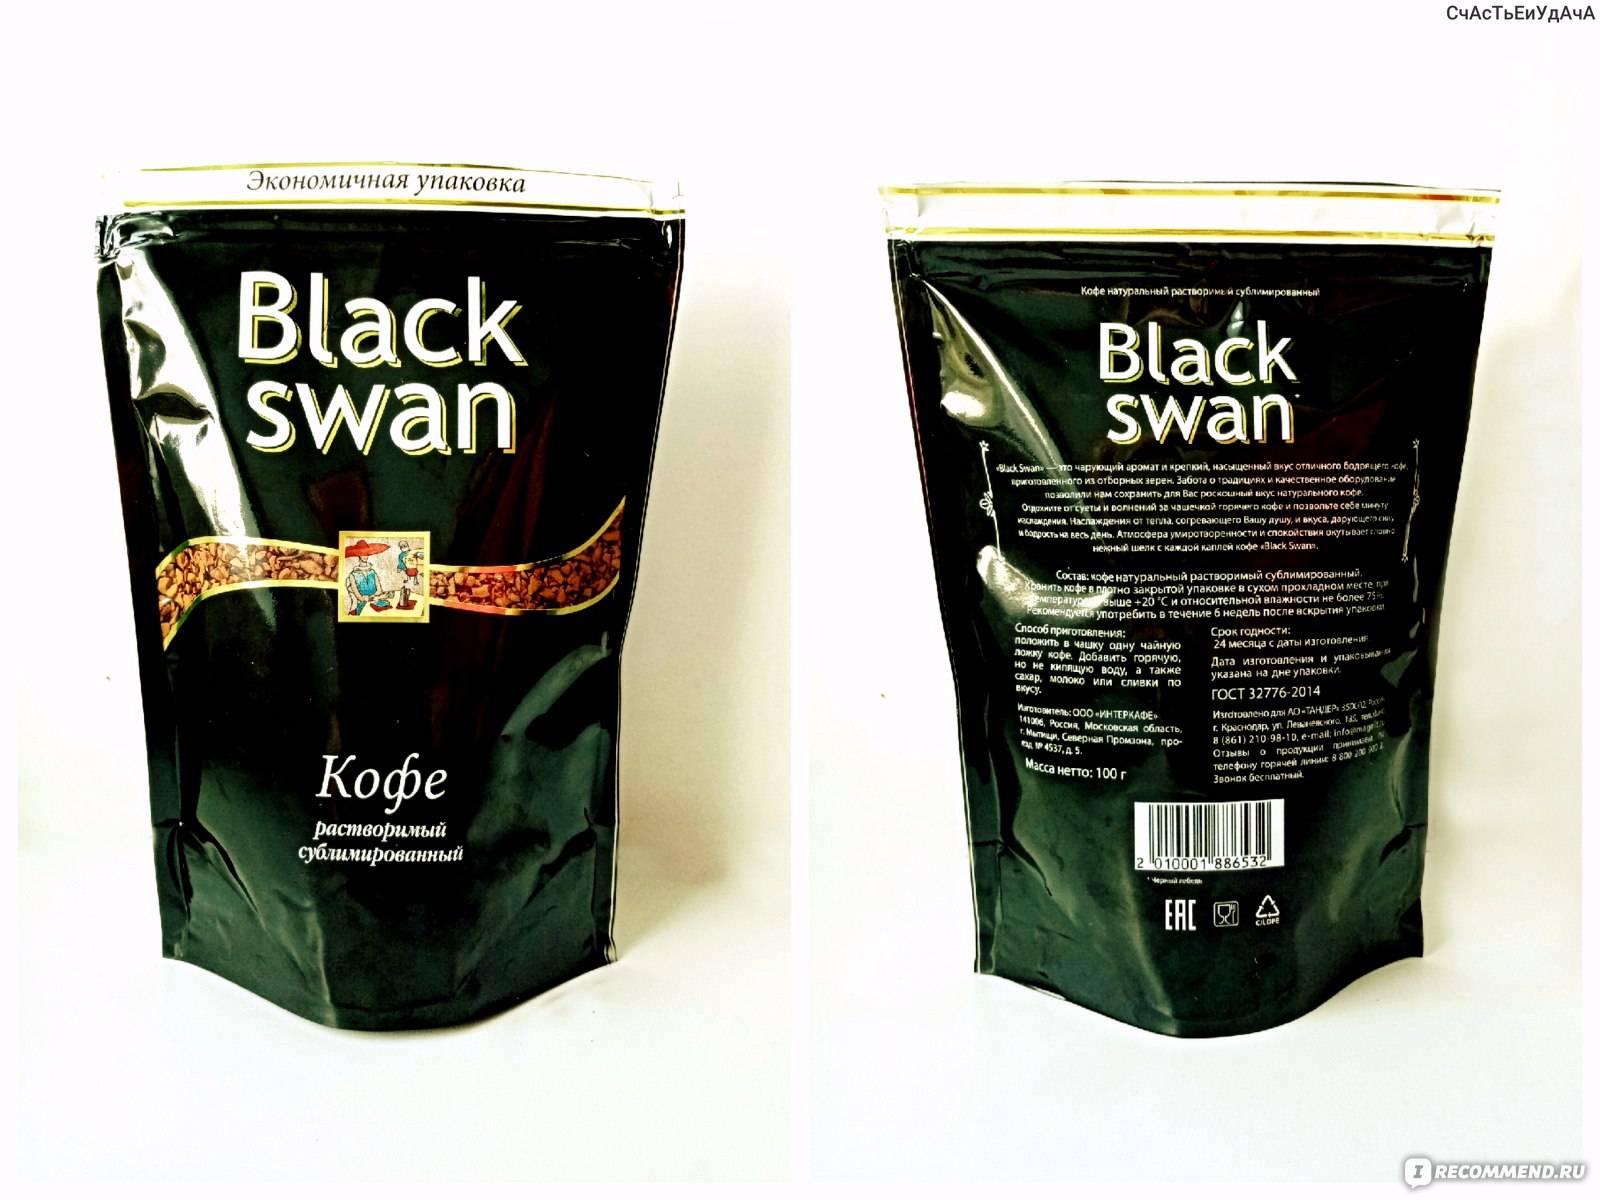 Кофе black swan (блэк свон - черный лебедь) - торговая марка сети магнит, ассортимент